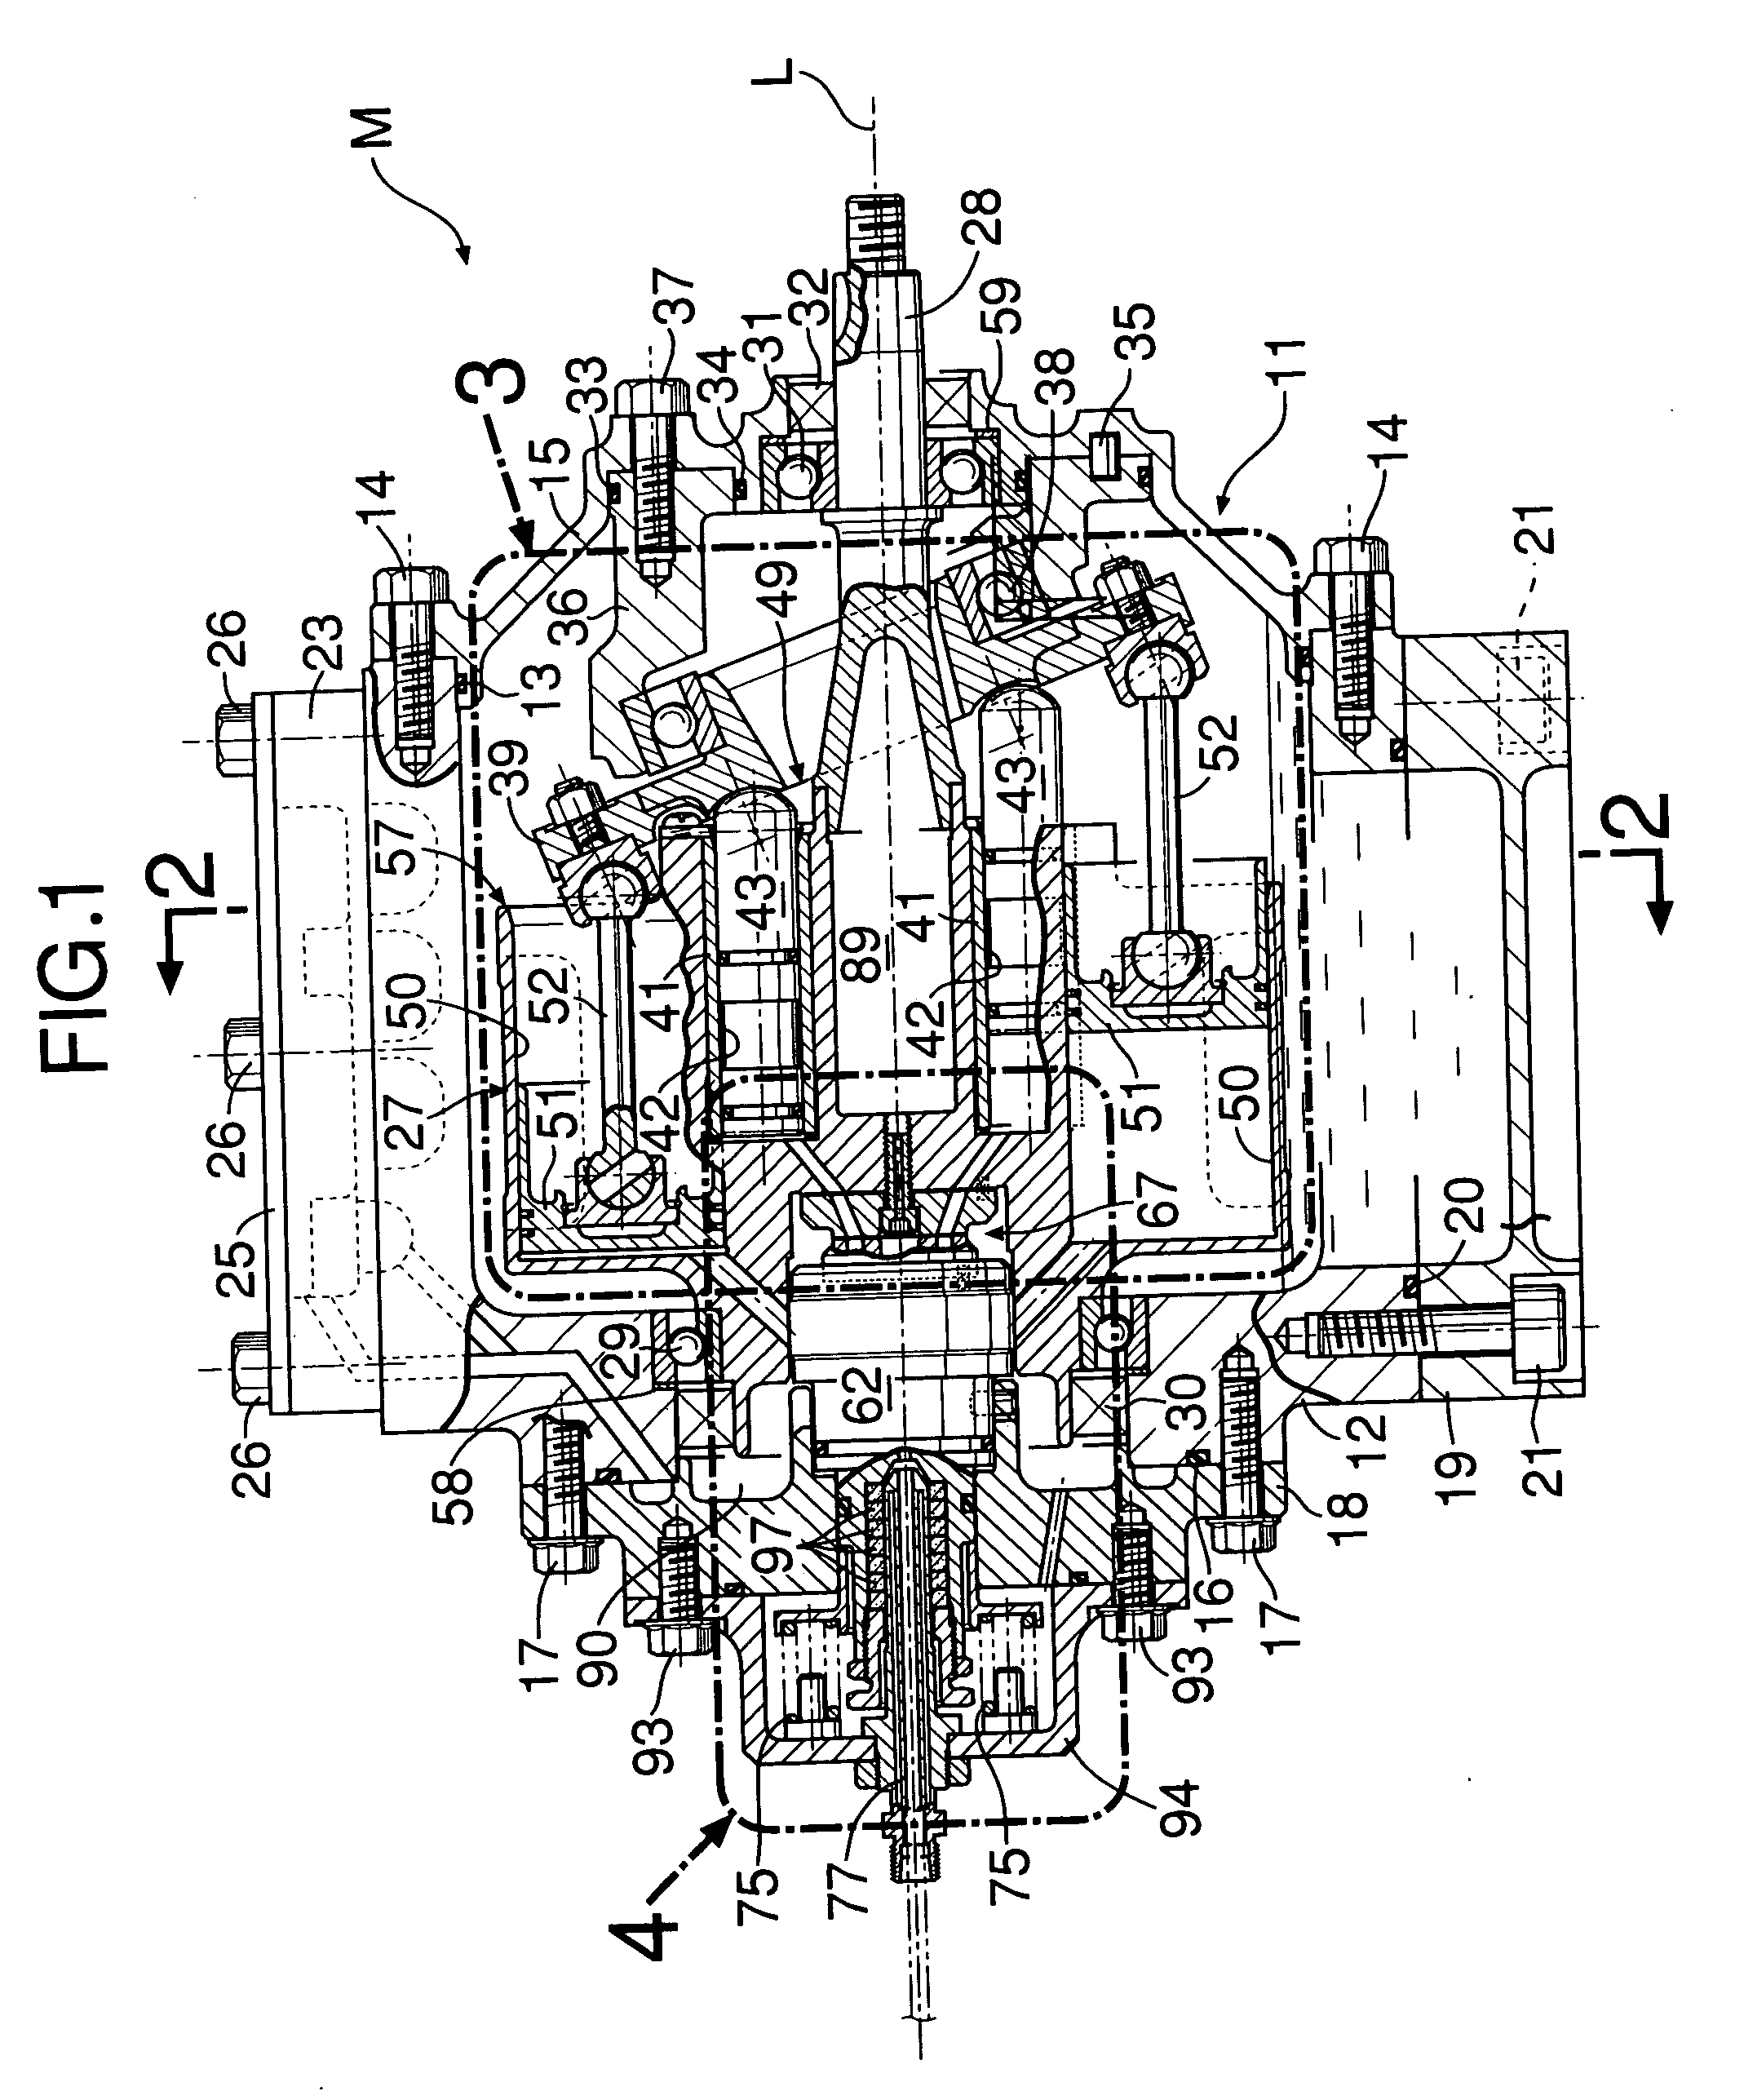 Rotary type fluid machine